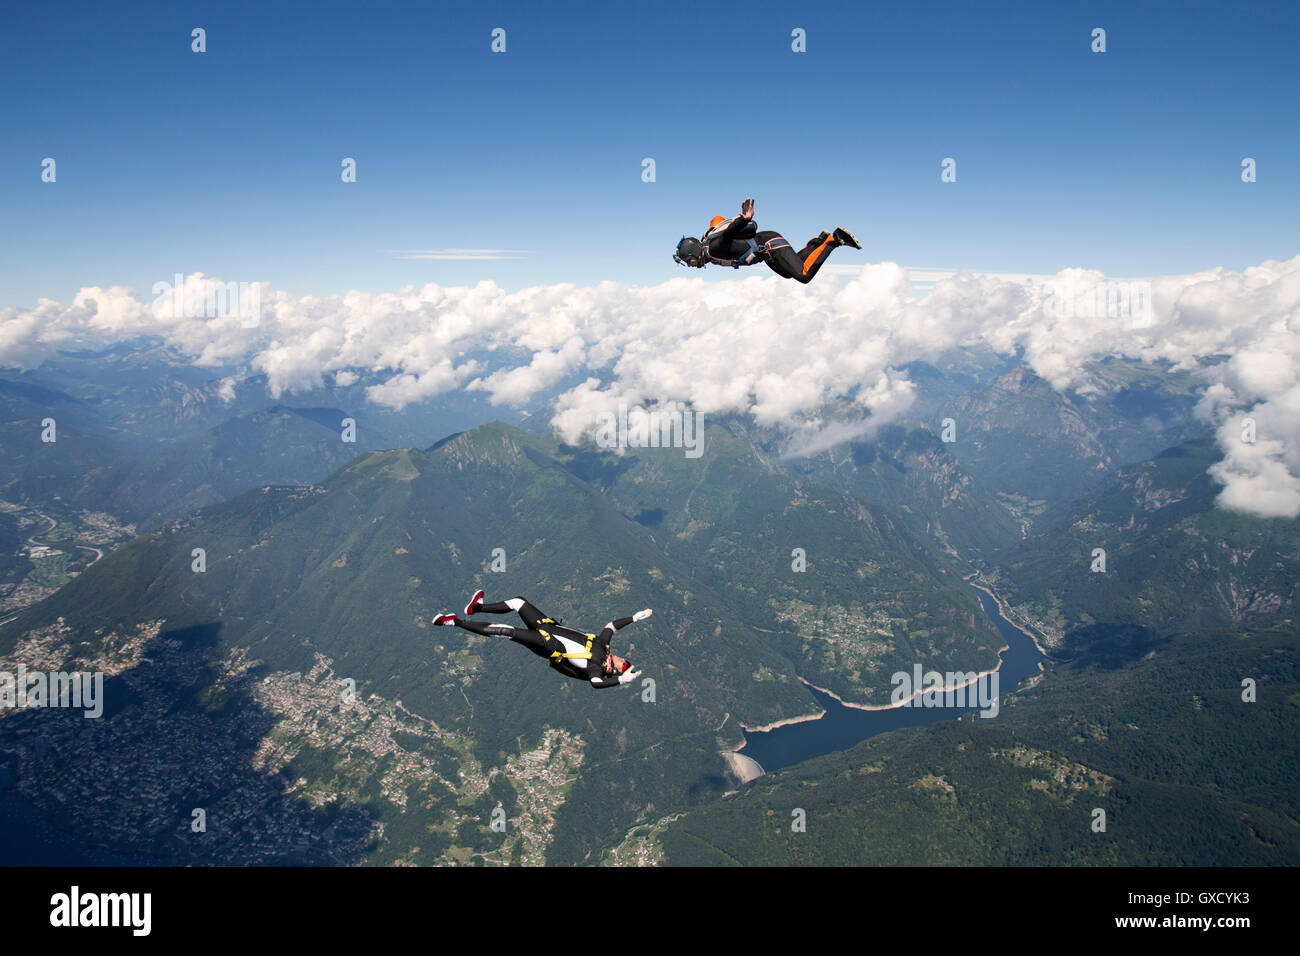 Formación del equipo de paracaidismo de Freestyle, un hombre realiza air-ballet, otra filmación con cámara, Locarno, Tessin, Suiza Foto de stock